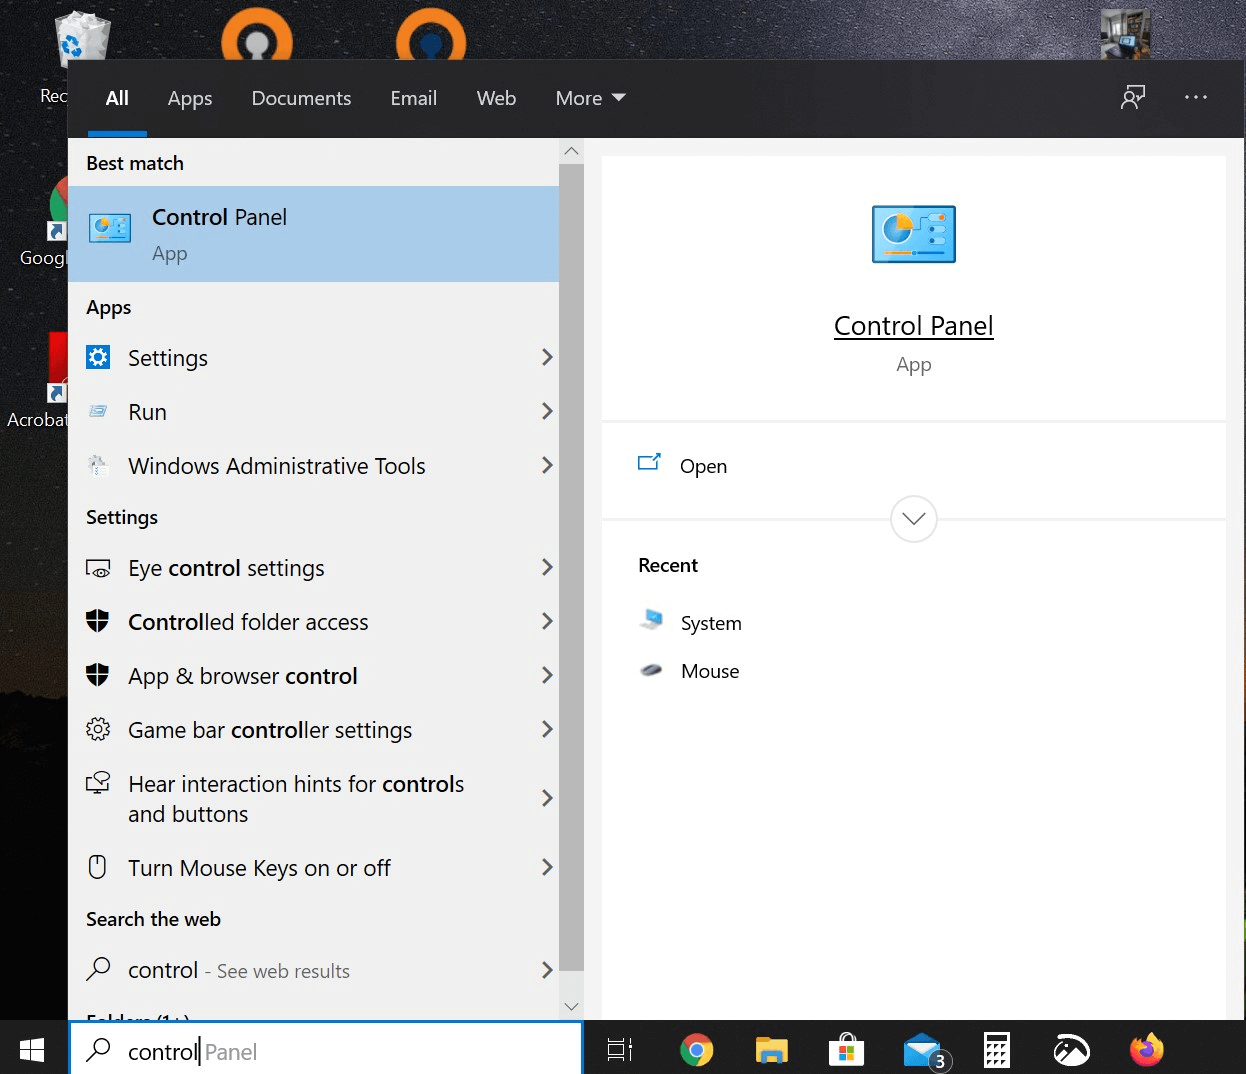 Funzione di ricerca nella barra delle applicazioni di Windows 10